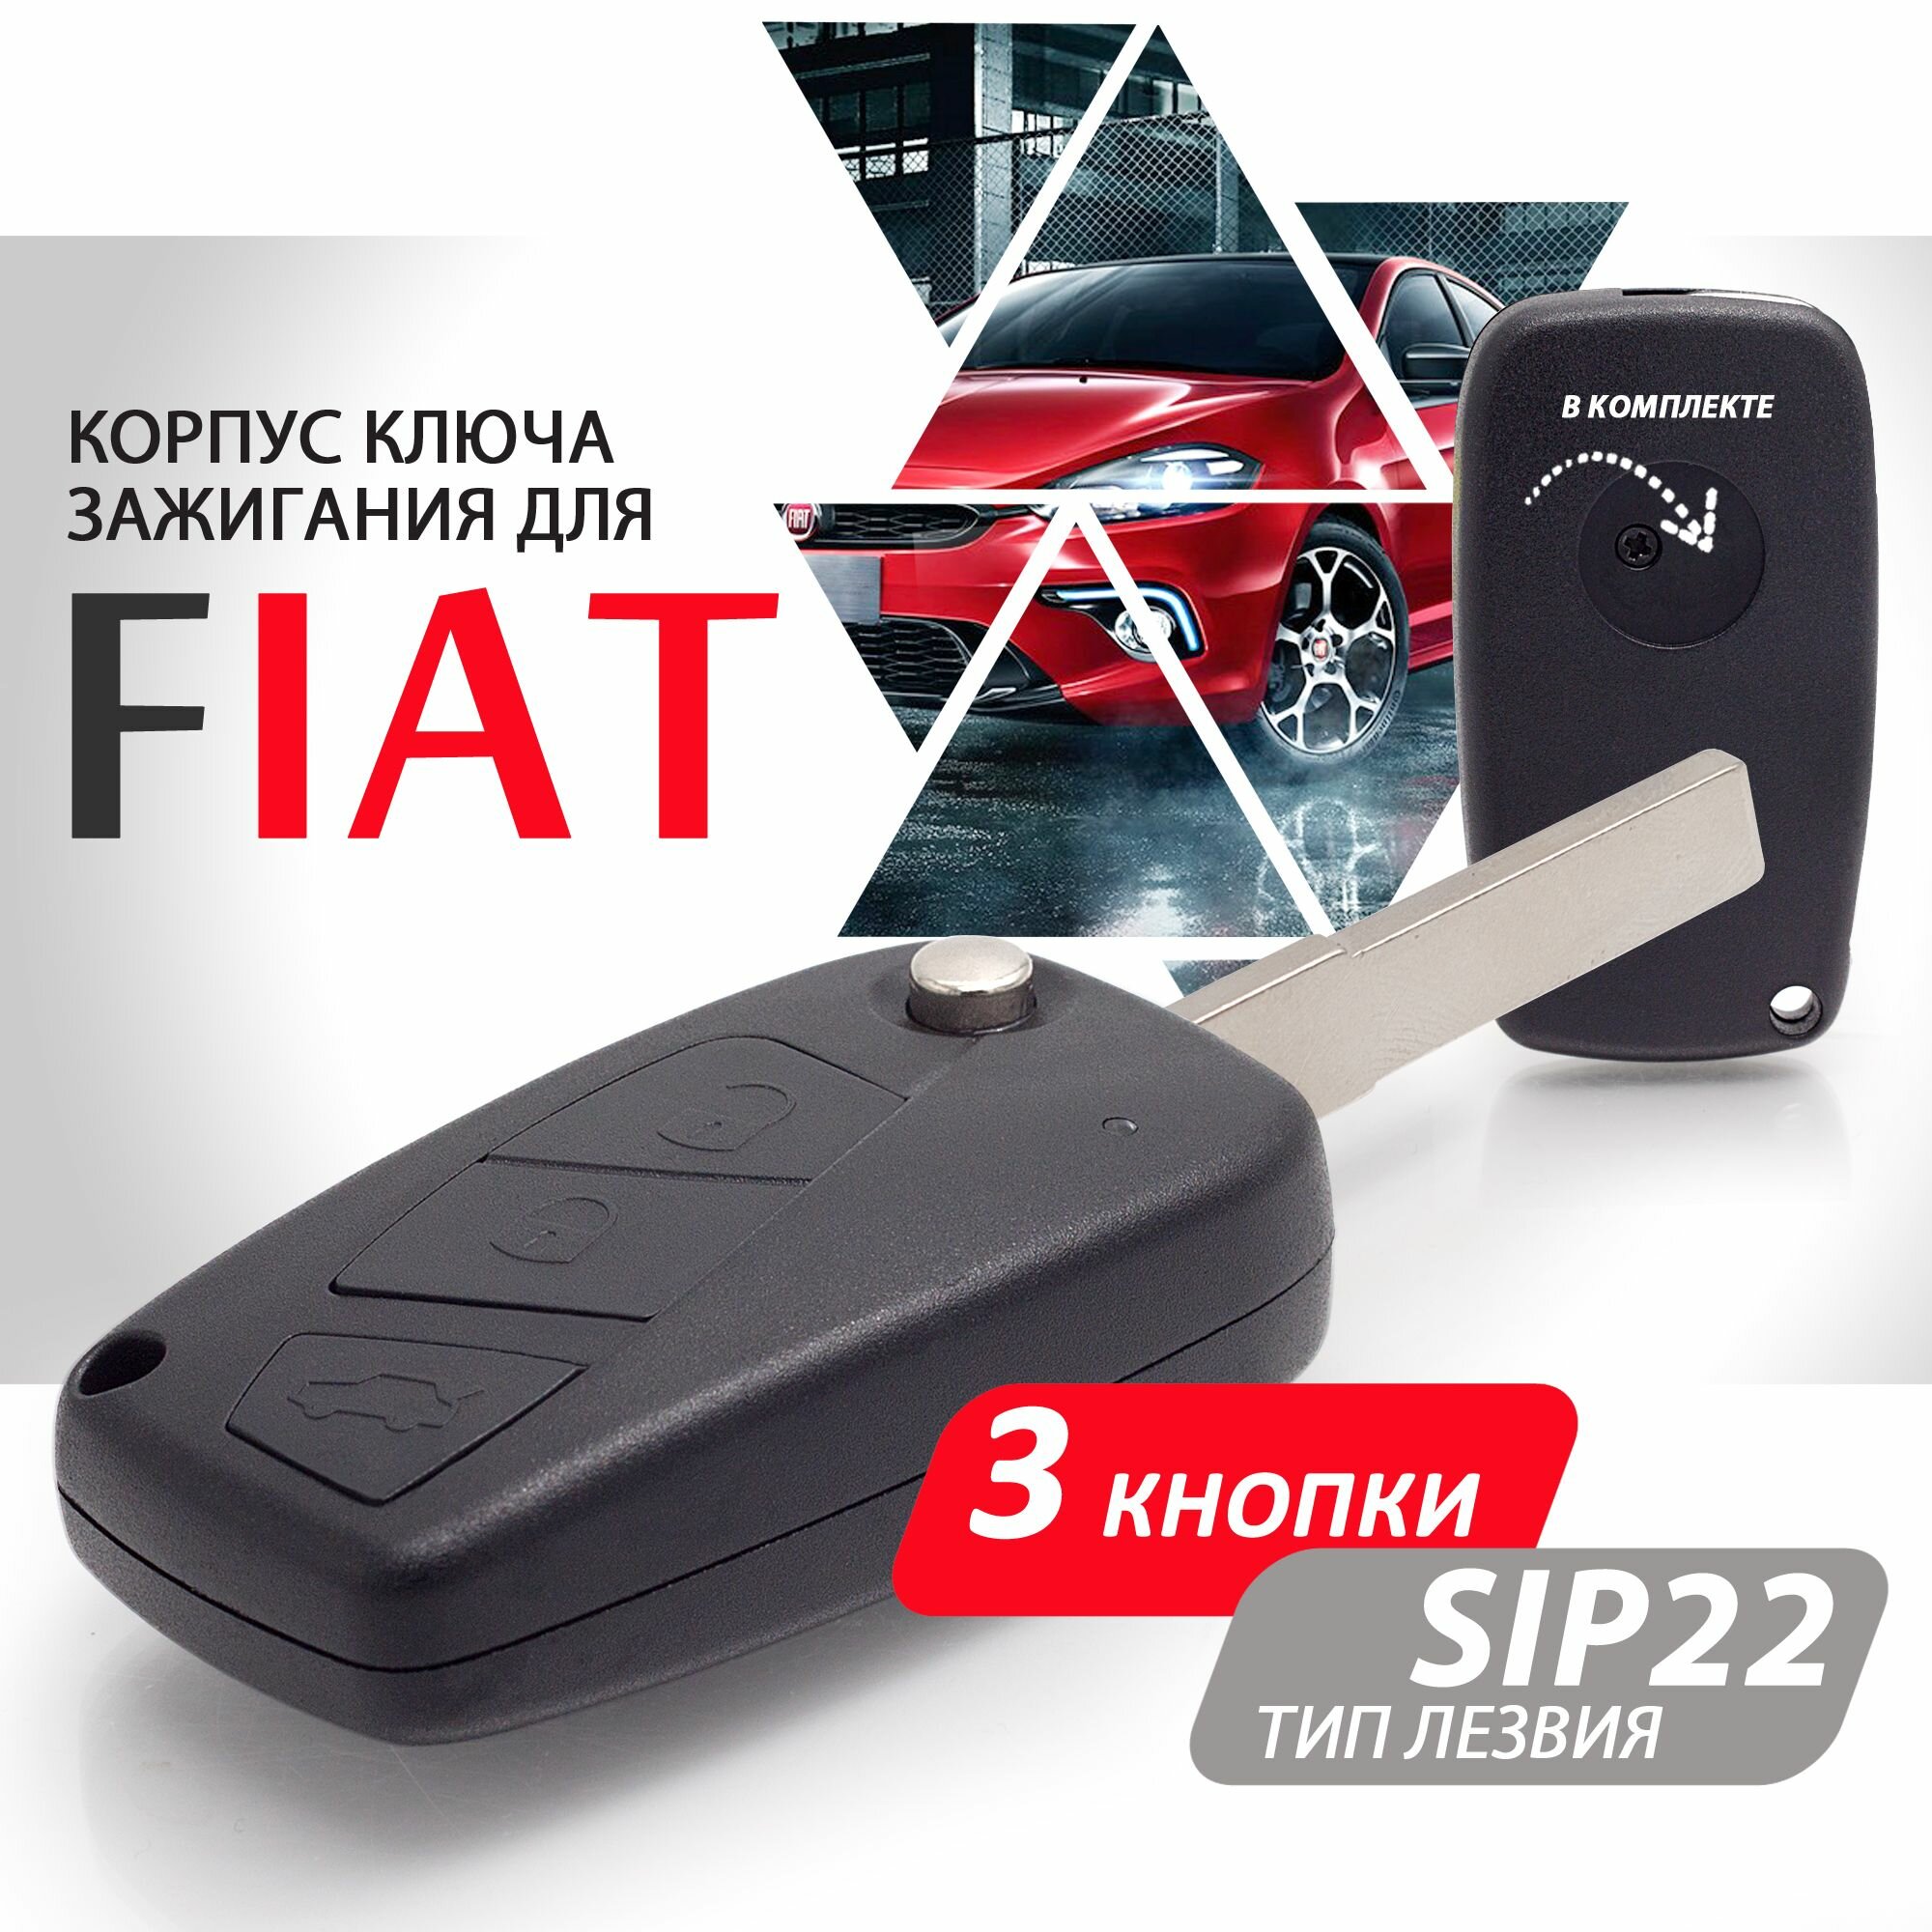 Корпус ключа зажигания для Fiat (3 кнопки SIP22) / ключ автомобильный фиат